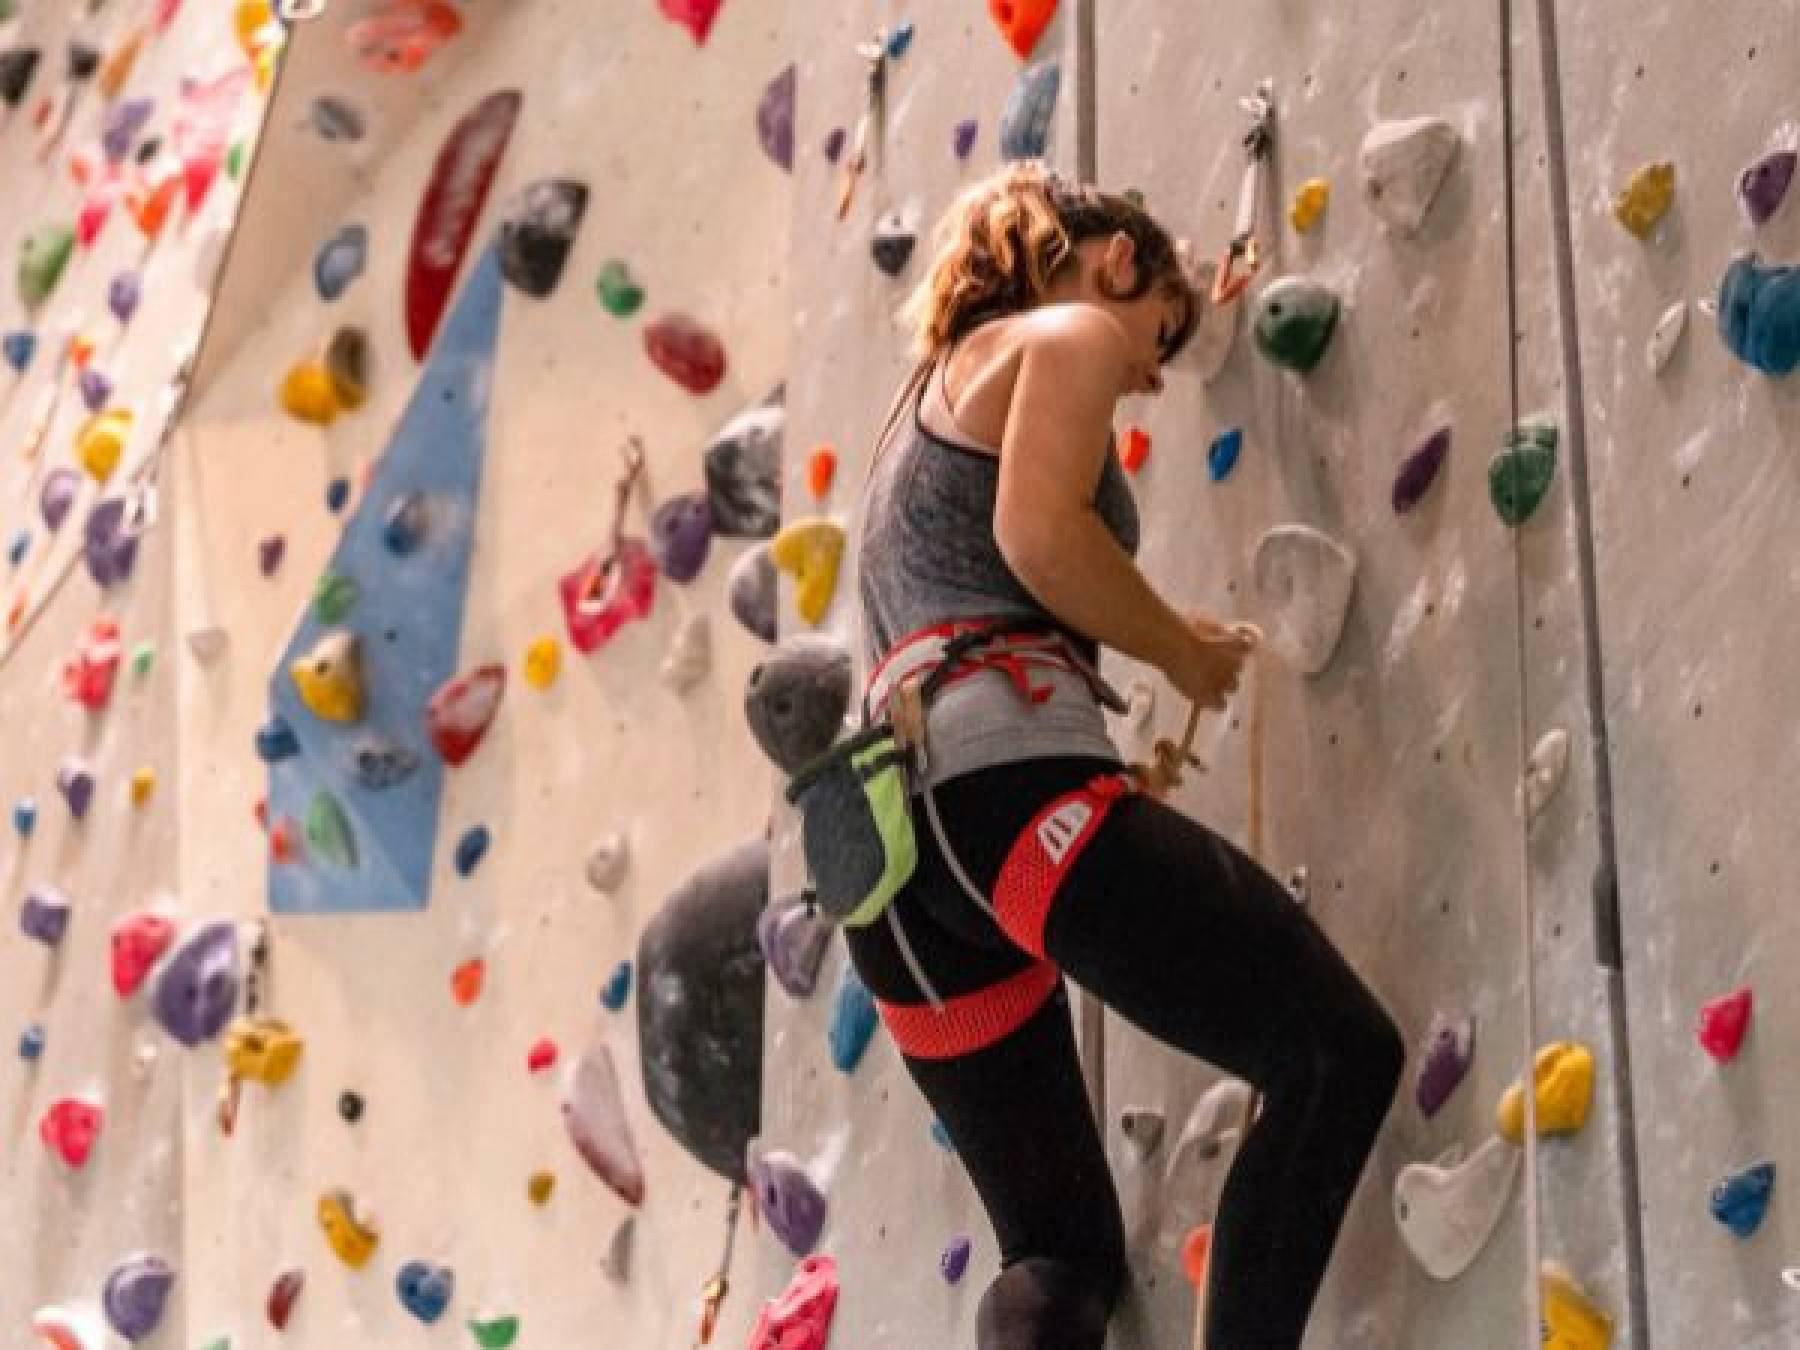 Trening na ściance wspinaczkowej: Jak poprawić swoje umiejętności i czerpać radość ze wspinaczki